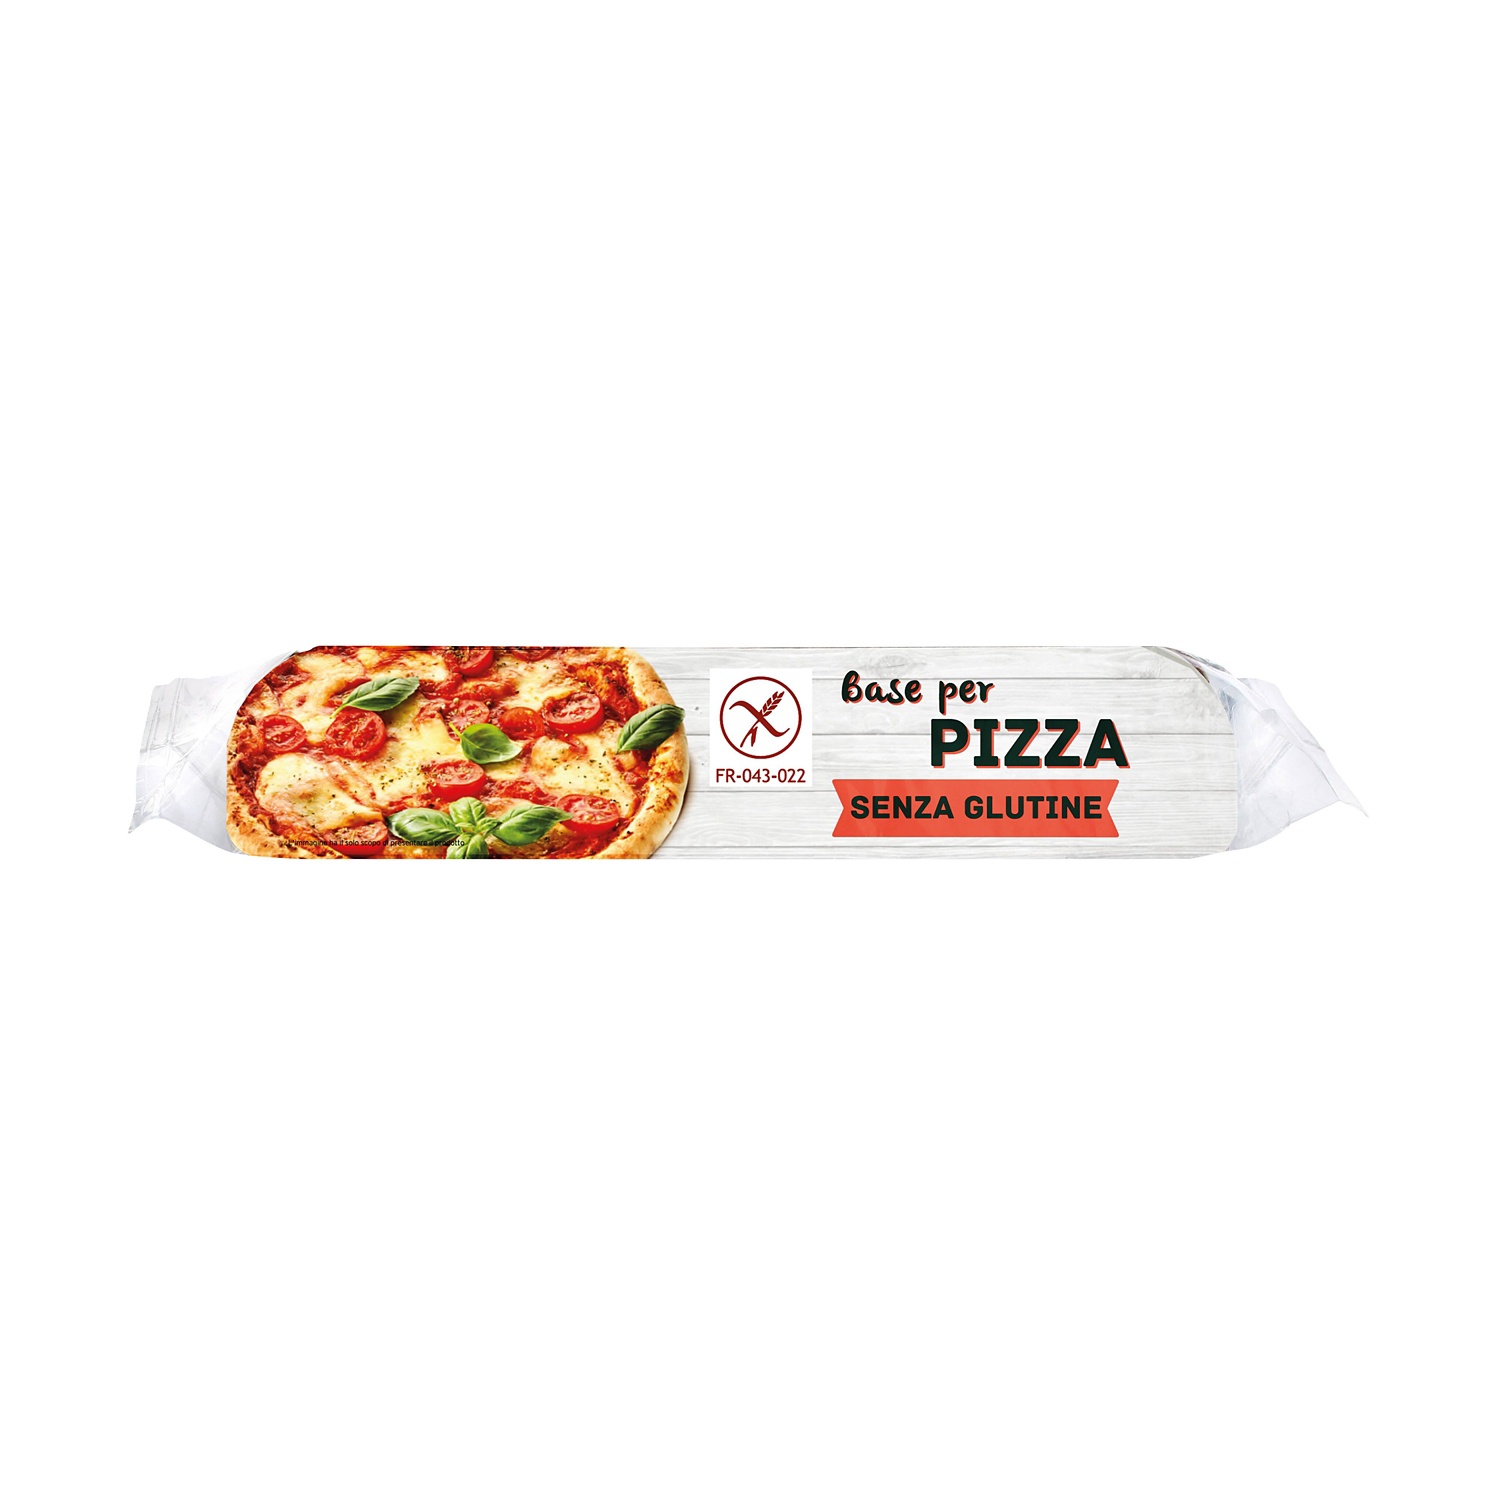 Base per pizza senza glutine